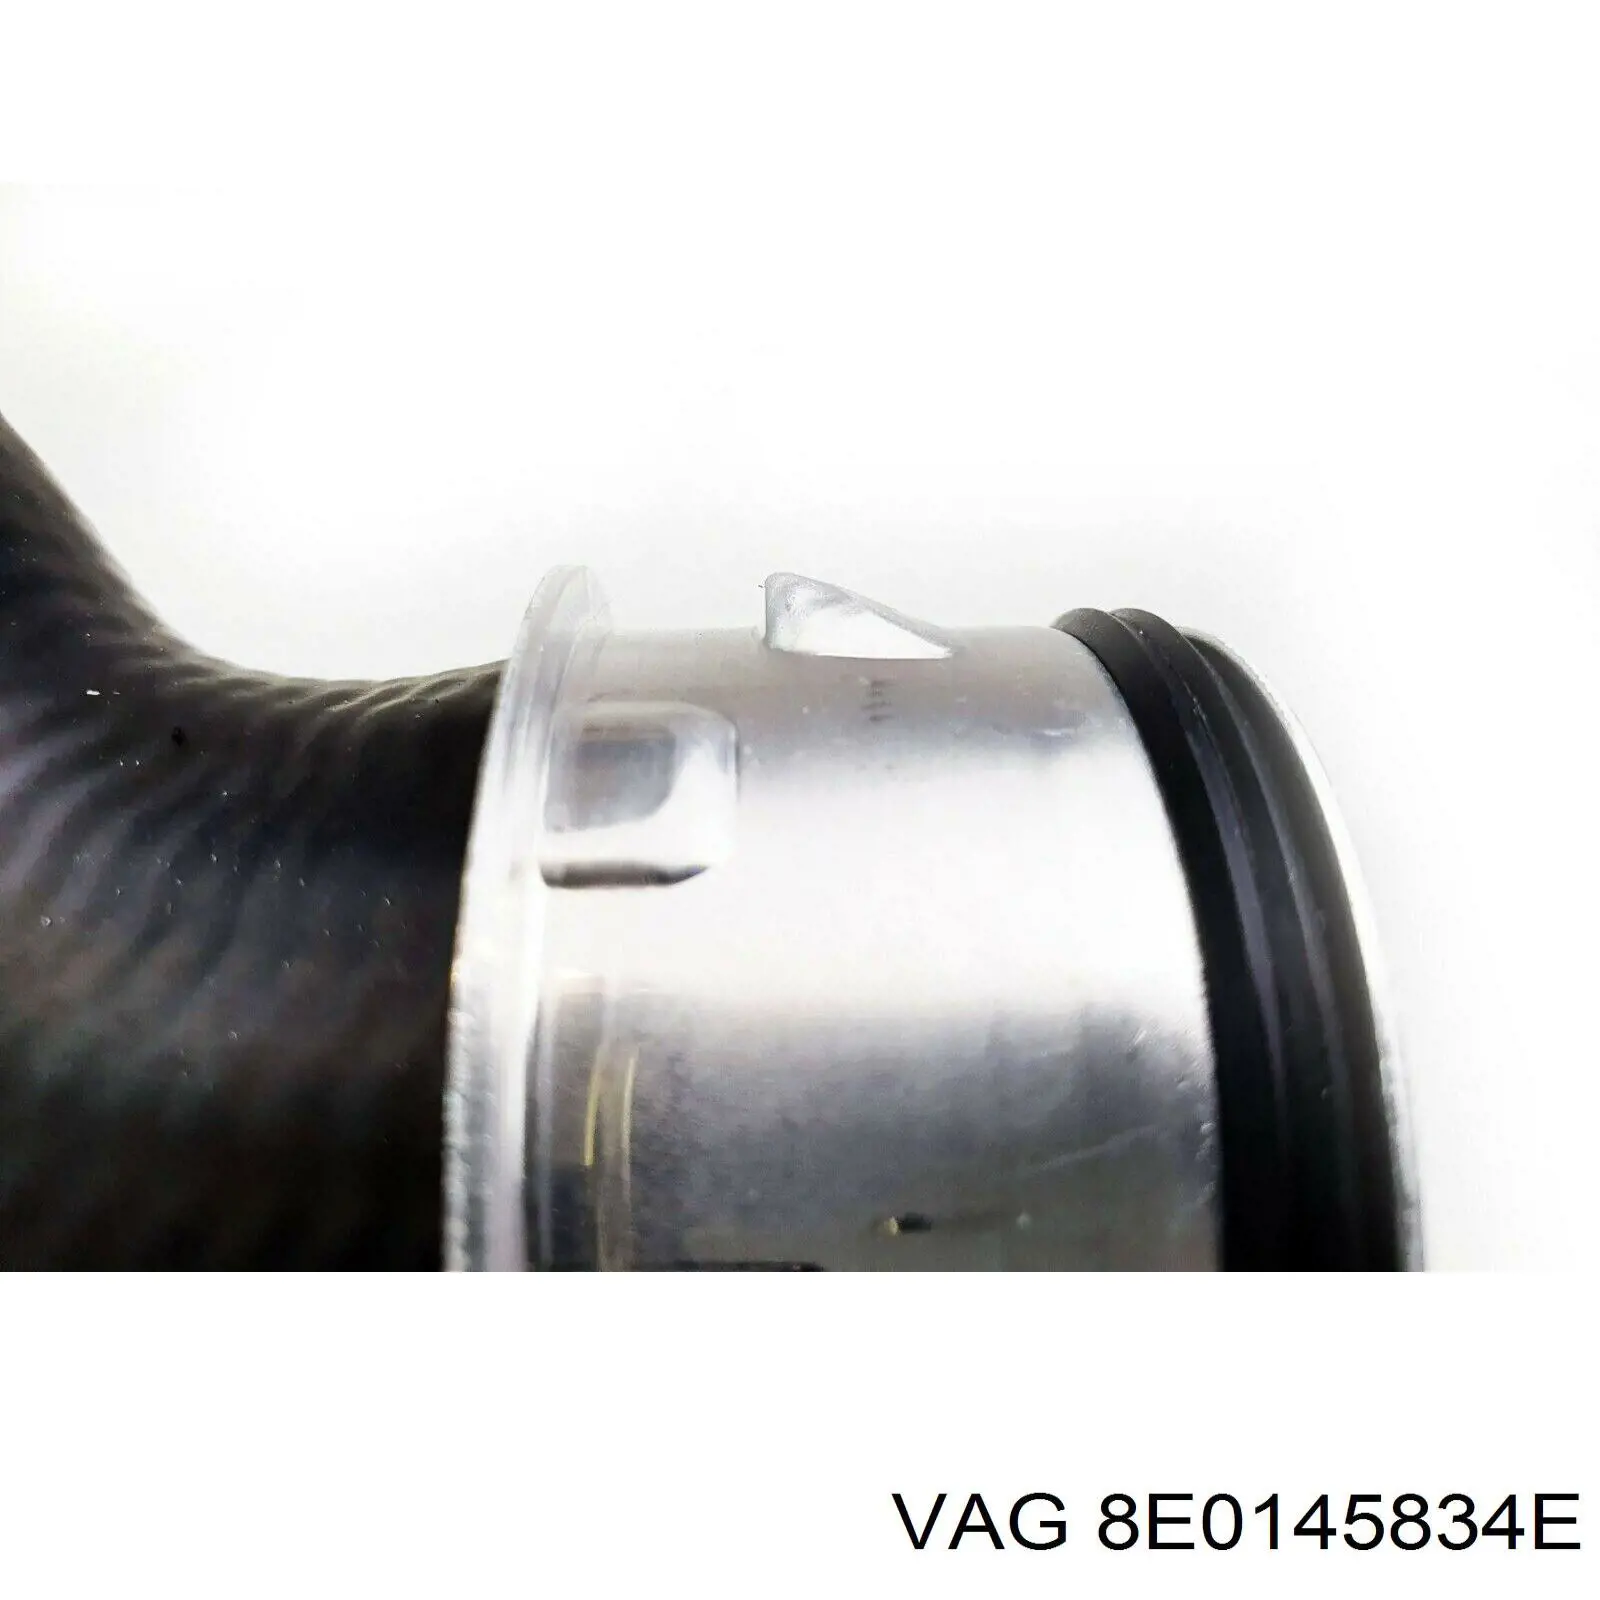 8E0145834E VAG tubo flexible de aire de sobrealimentación inferior derecho